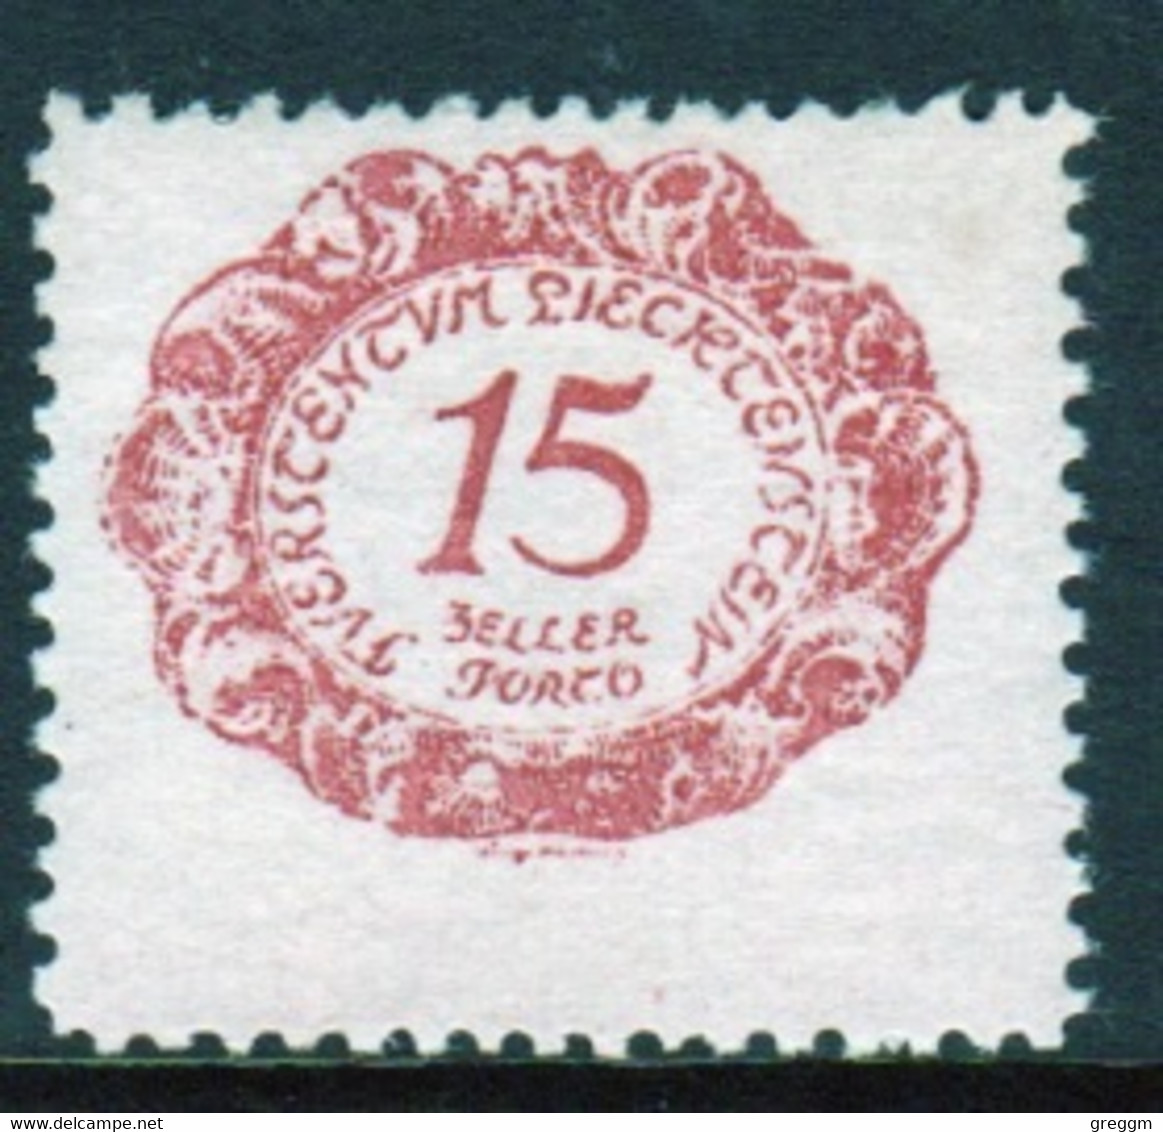 Liechtenstein 1920 Single 15h  Postage Due Stamp In Unmounted Mint Condition. - Postage Due